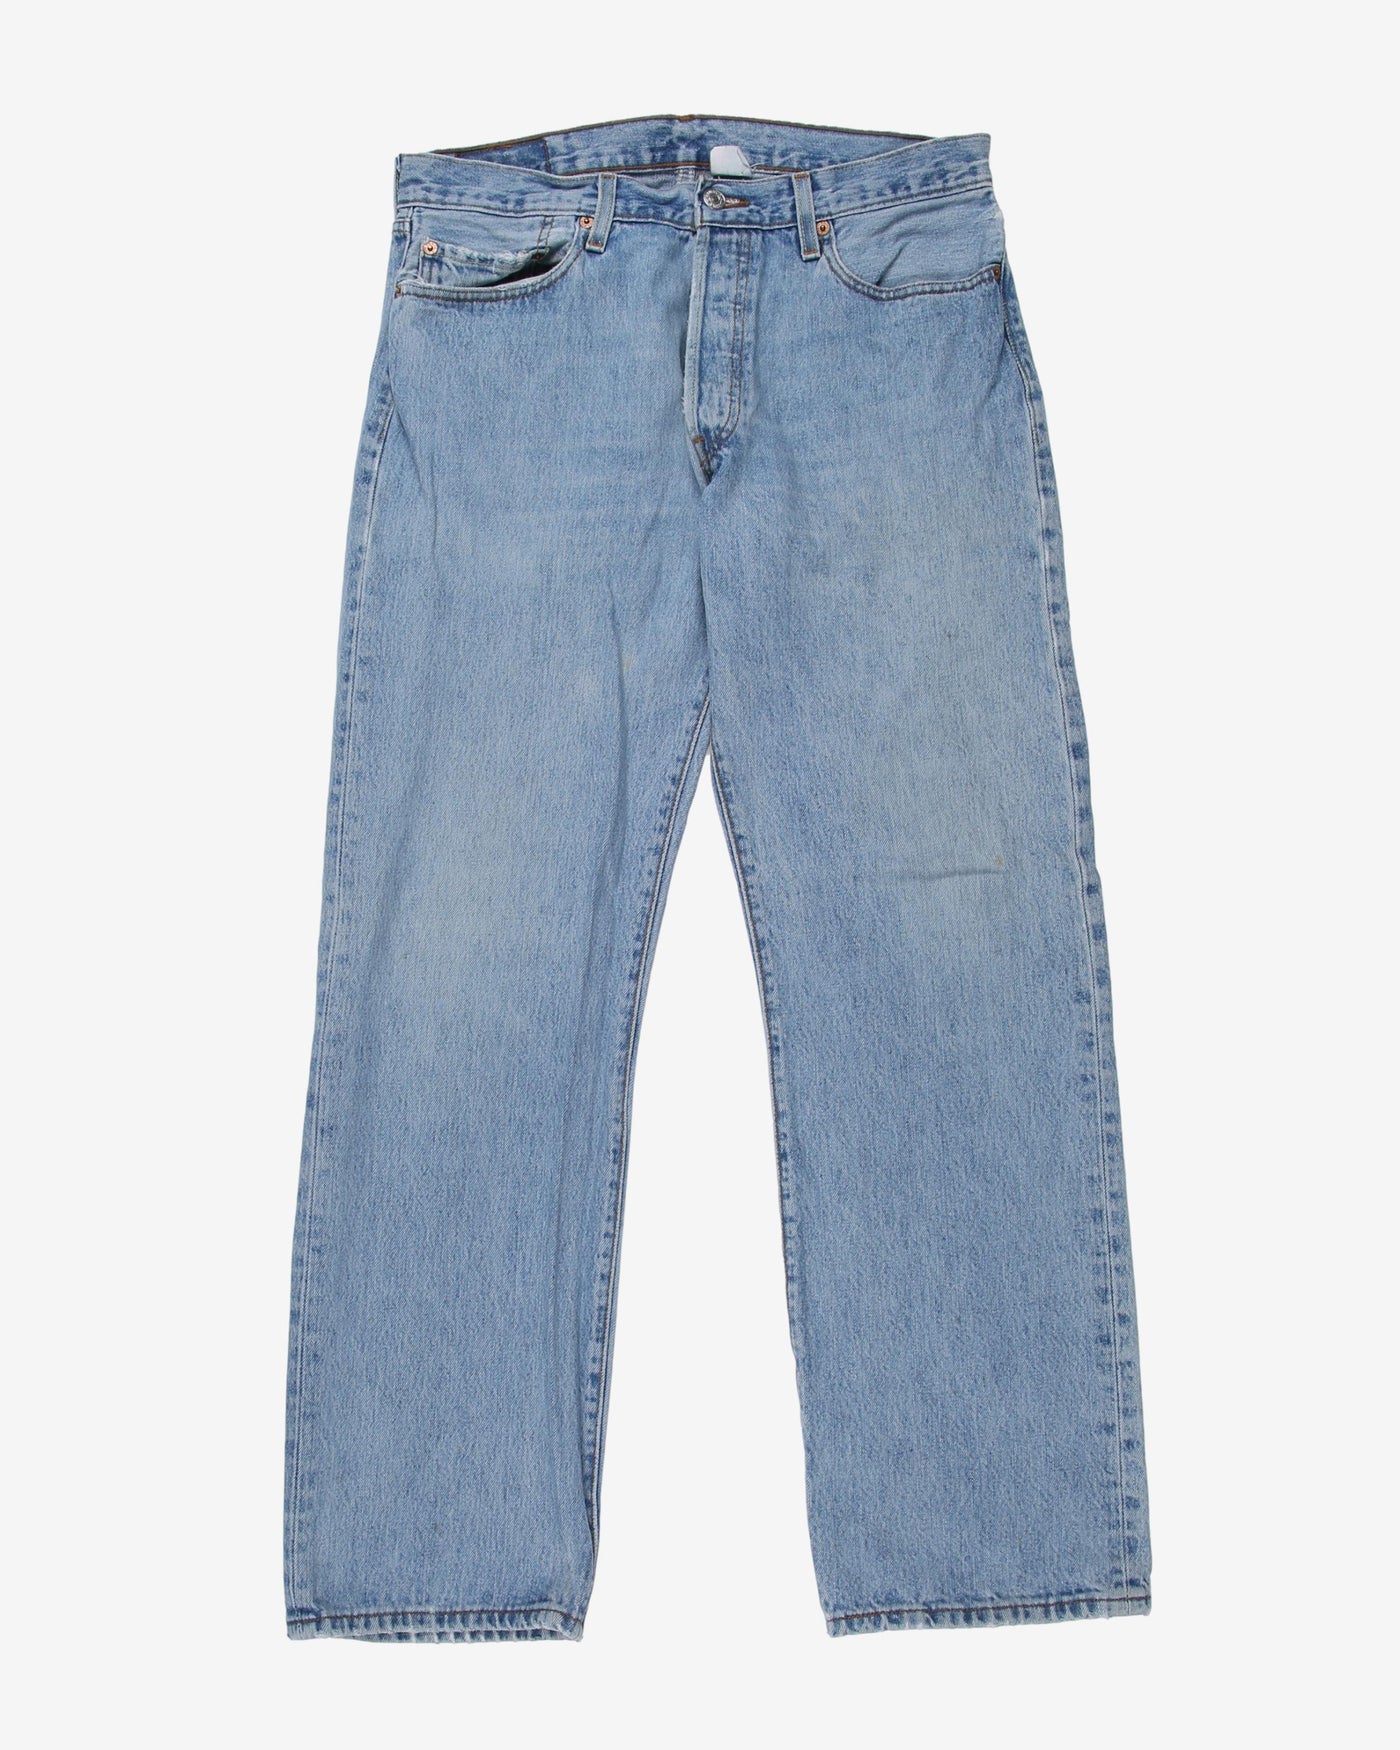 Vintage Levi's 501 Denim Light Blue Jeans - W33 L28